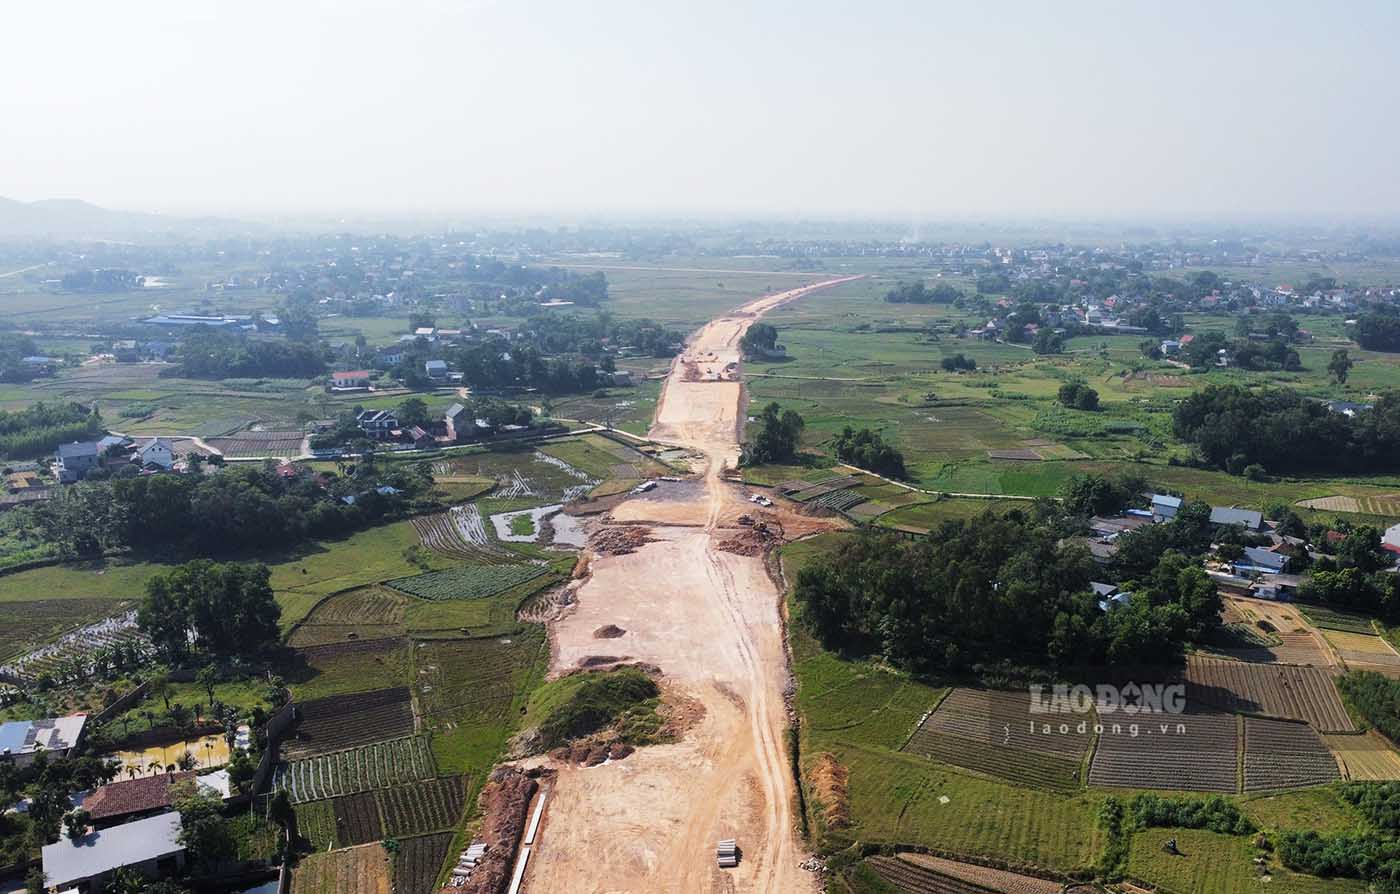 Ngày 17.10, ghi nhận của PV tại khu vực điểm đầu dự án đi qua phường Đồng Tiến (TP Phổ Yên), sau hơn 1 năm thi công hình hài tuyến đường nghìn tỉ đã bắt đầu hình thành. Đoạn đầu tuyến đường sẽ kết nối với tỉnh Bắc Giang.